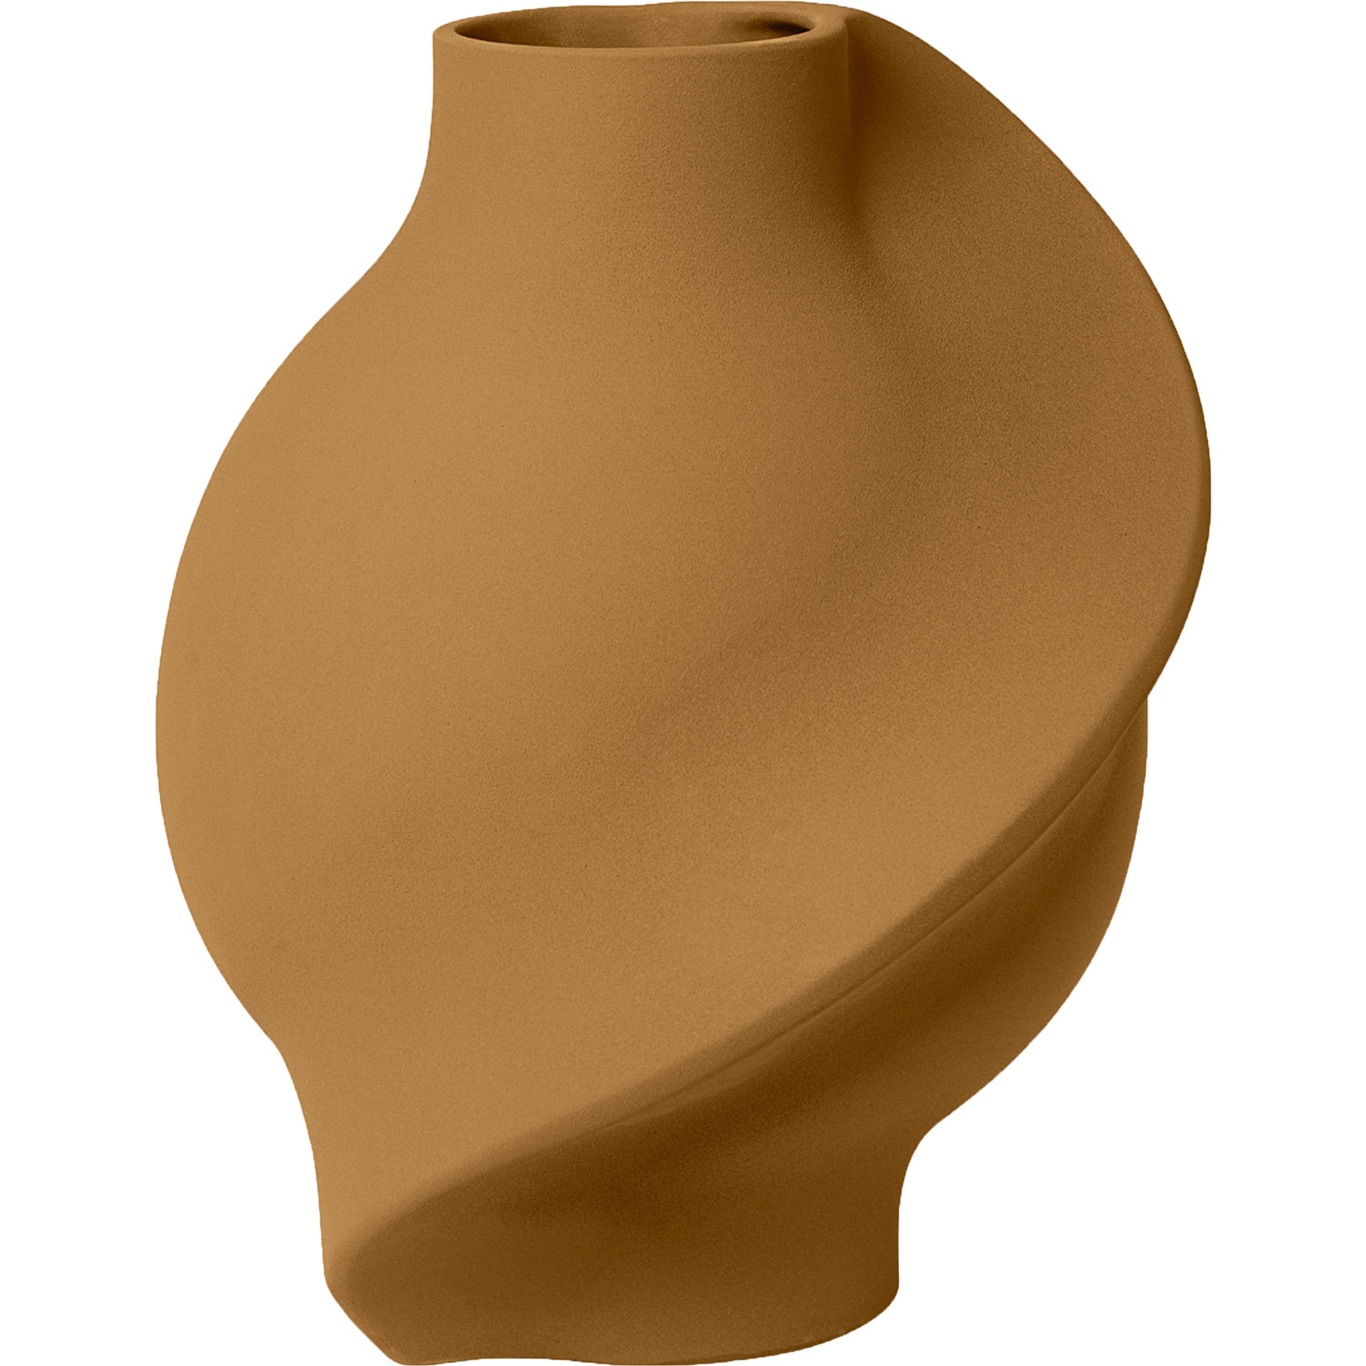 Pirout 02 Vase 42 cm, Sanded Ocker